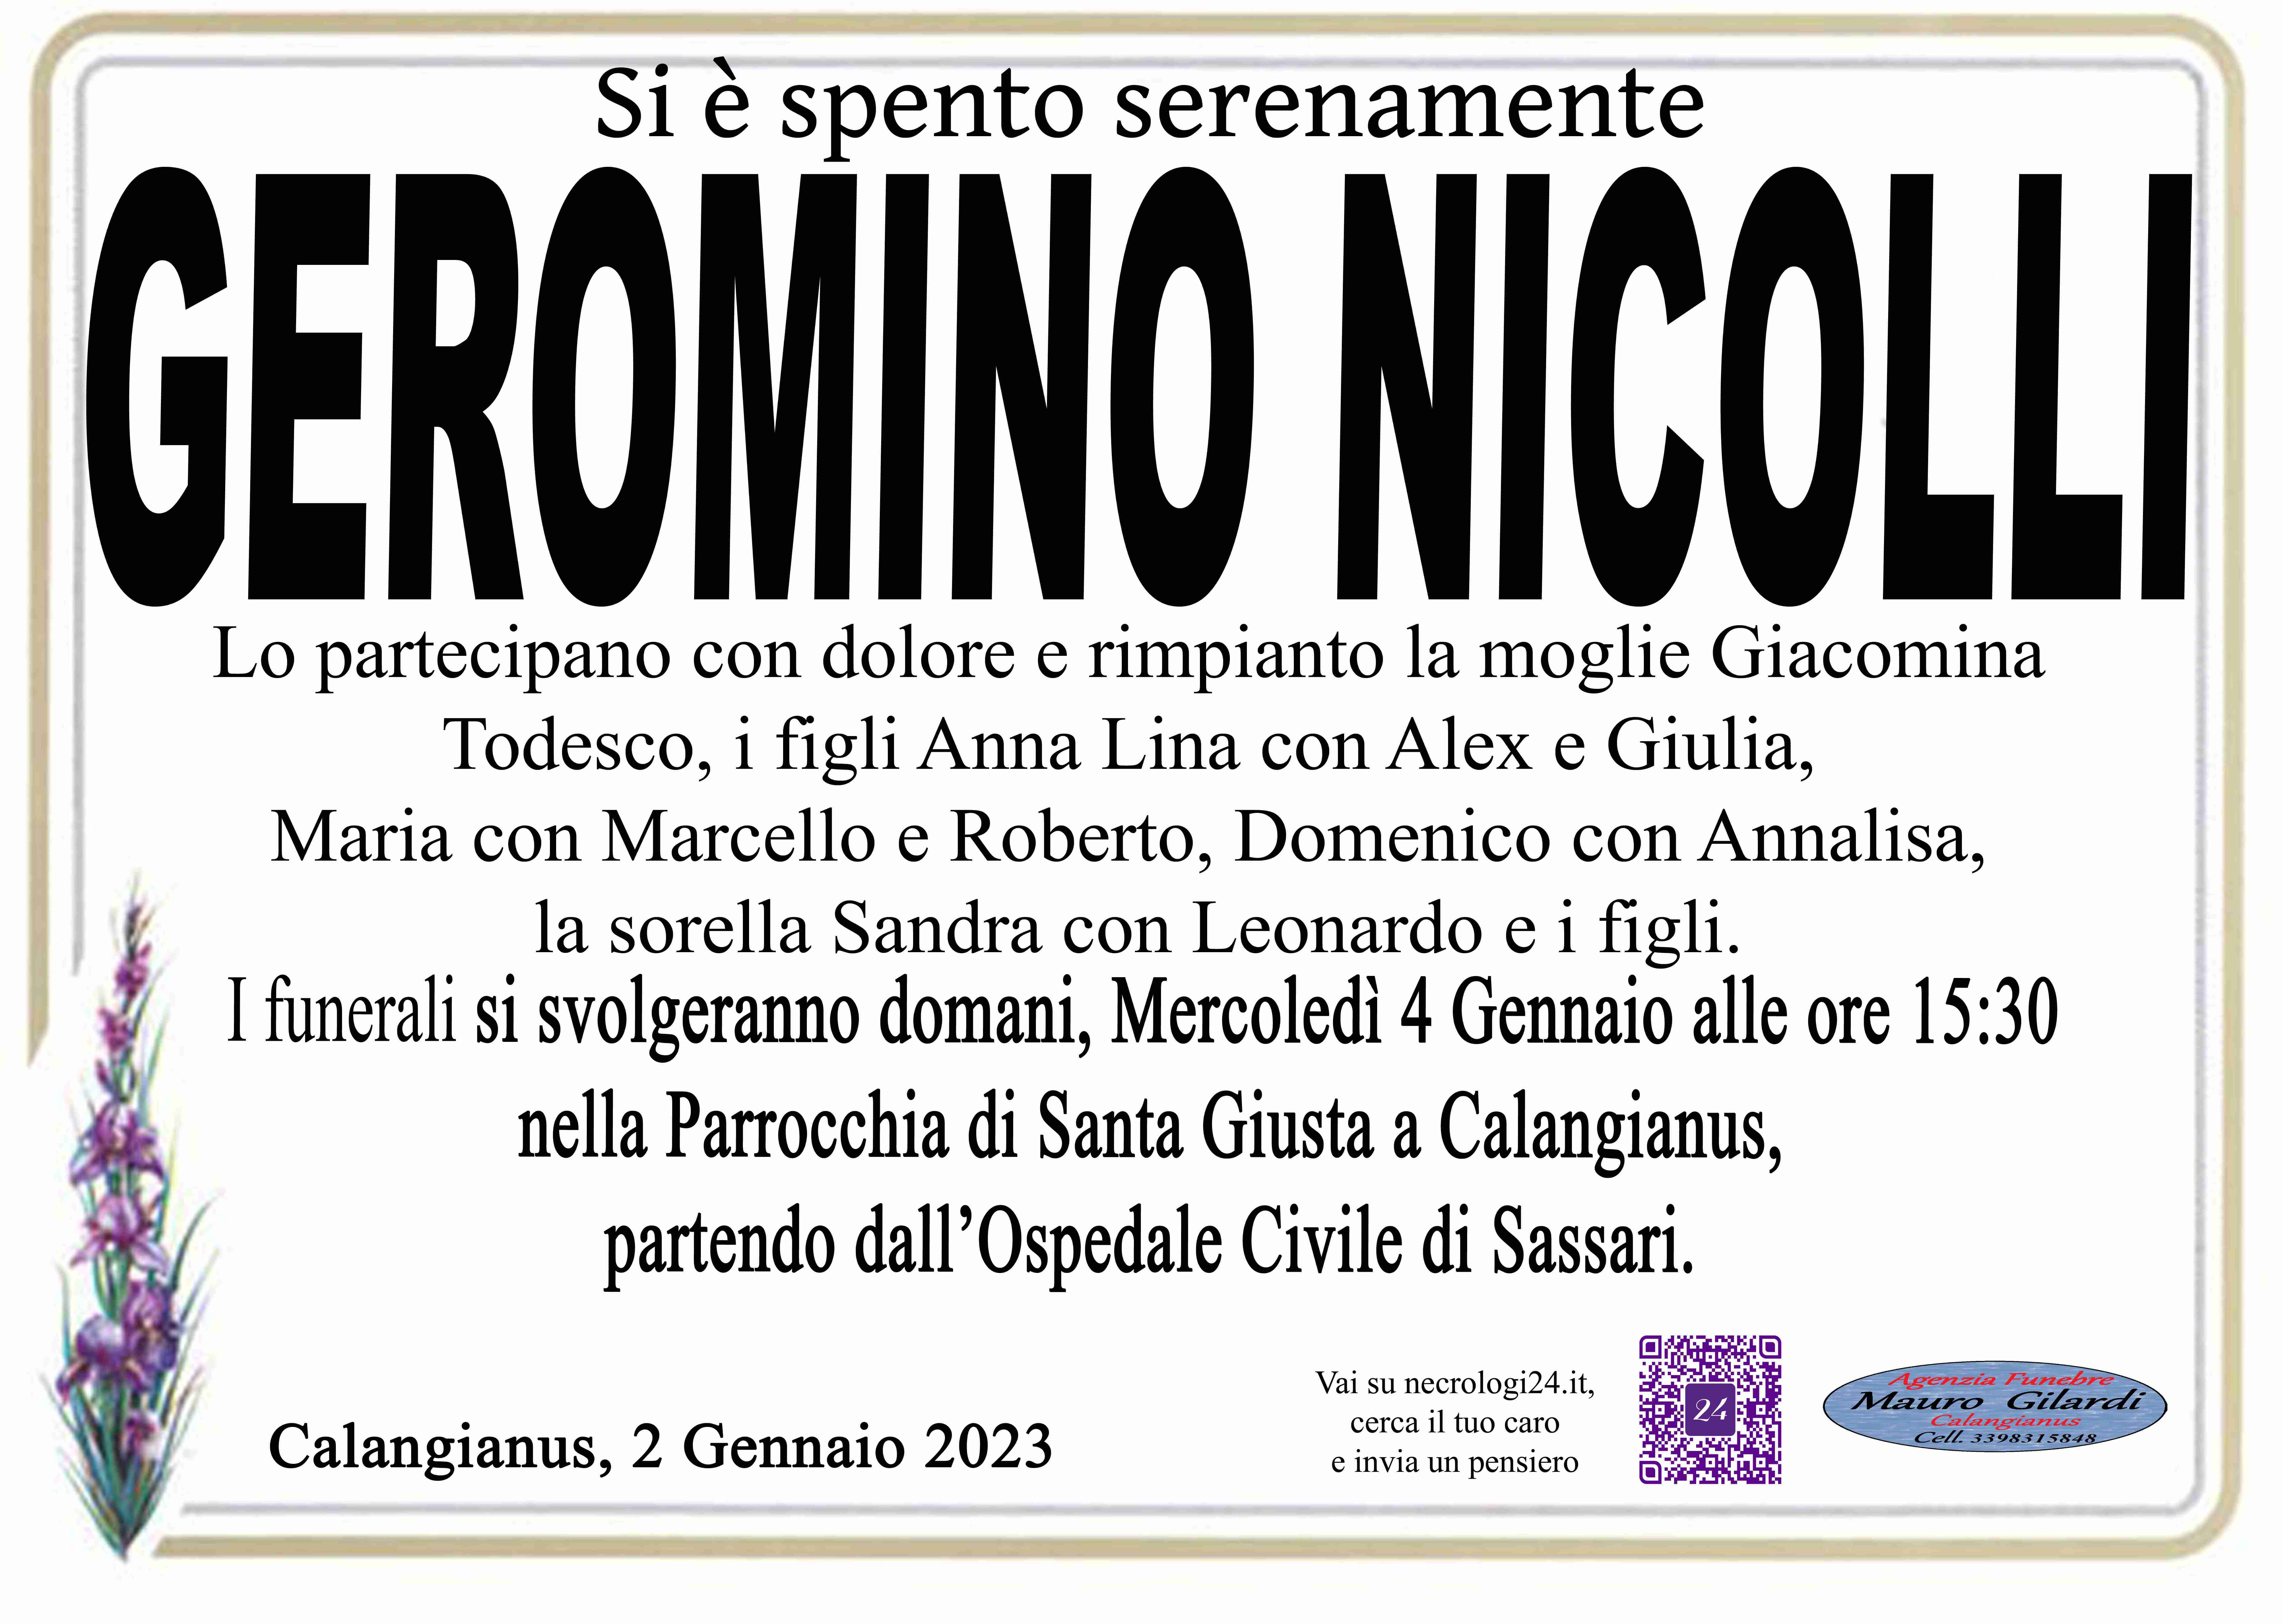 Geromino Nicolli